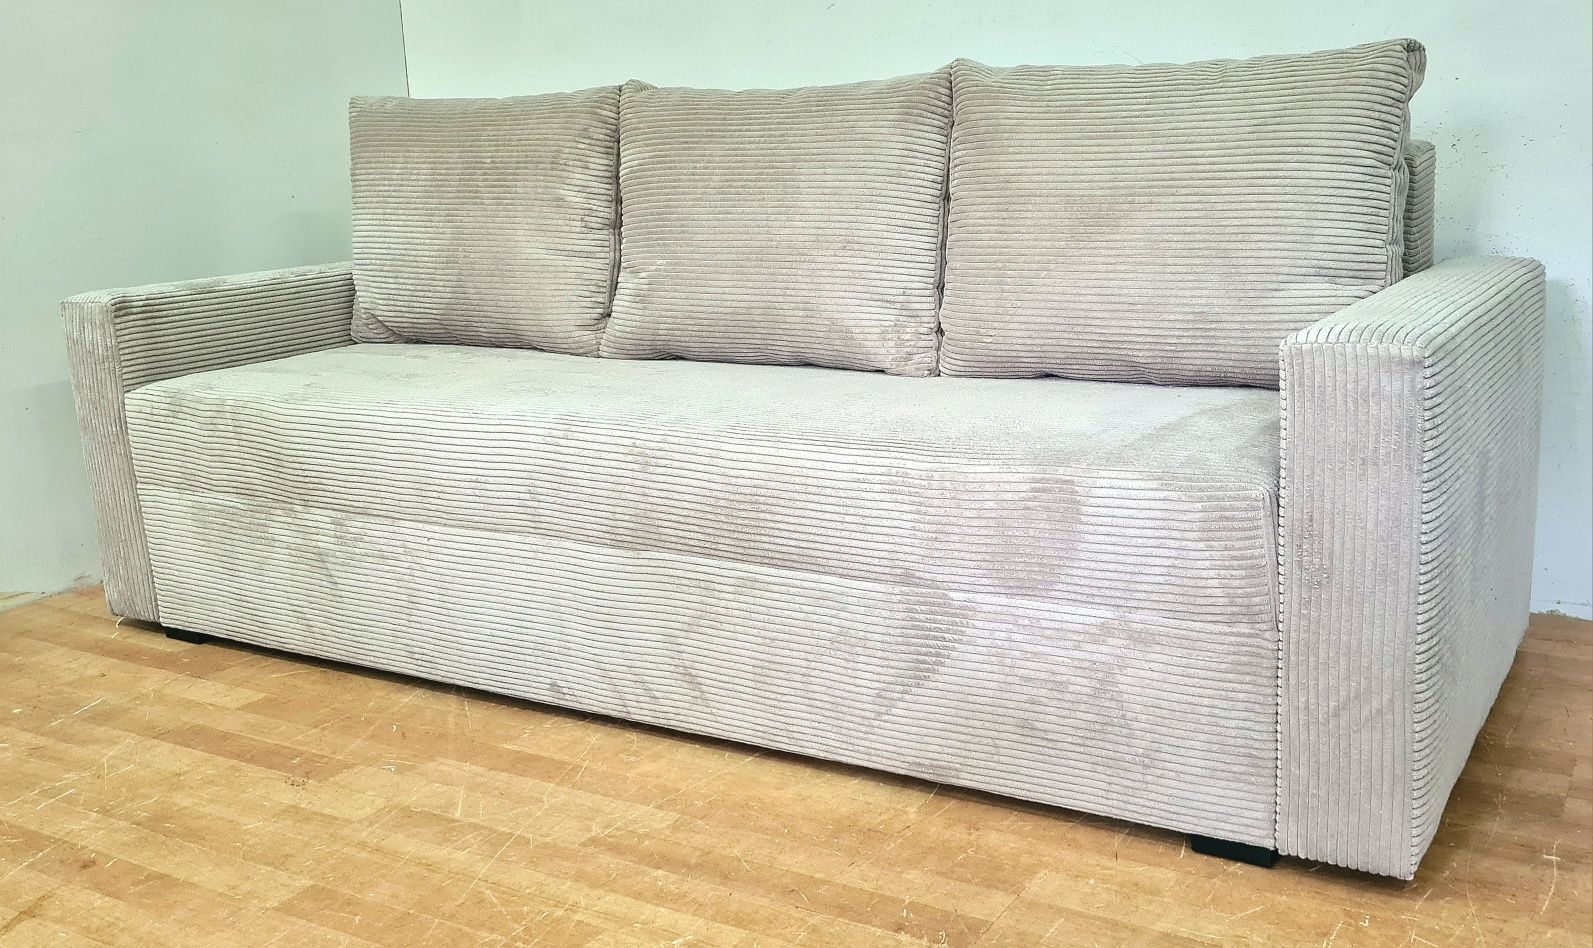 Nowa sofa sprężyny automat kanapa wersalka  welur plusz sztruks promo